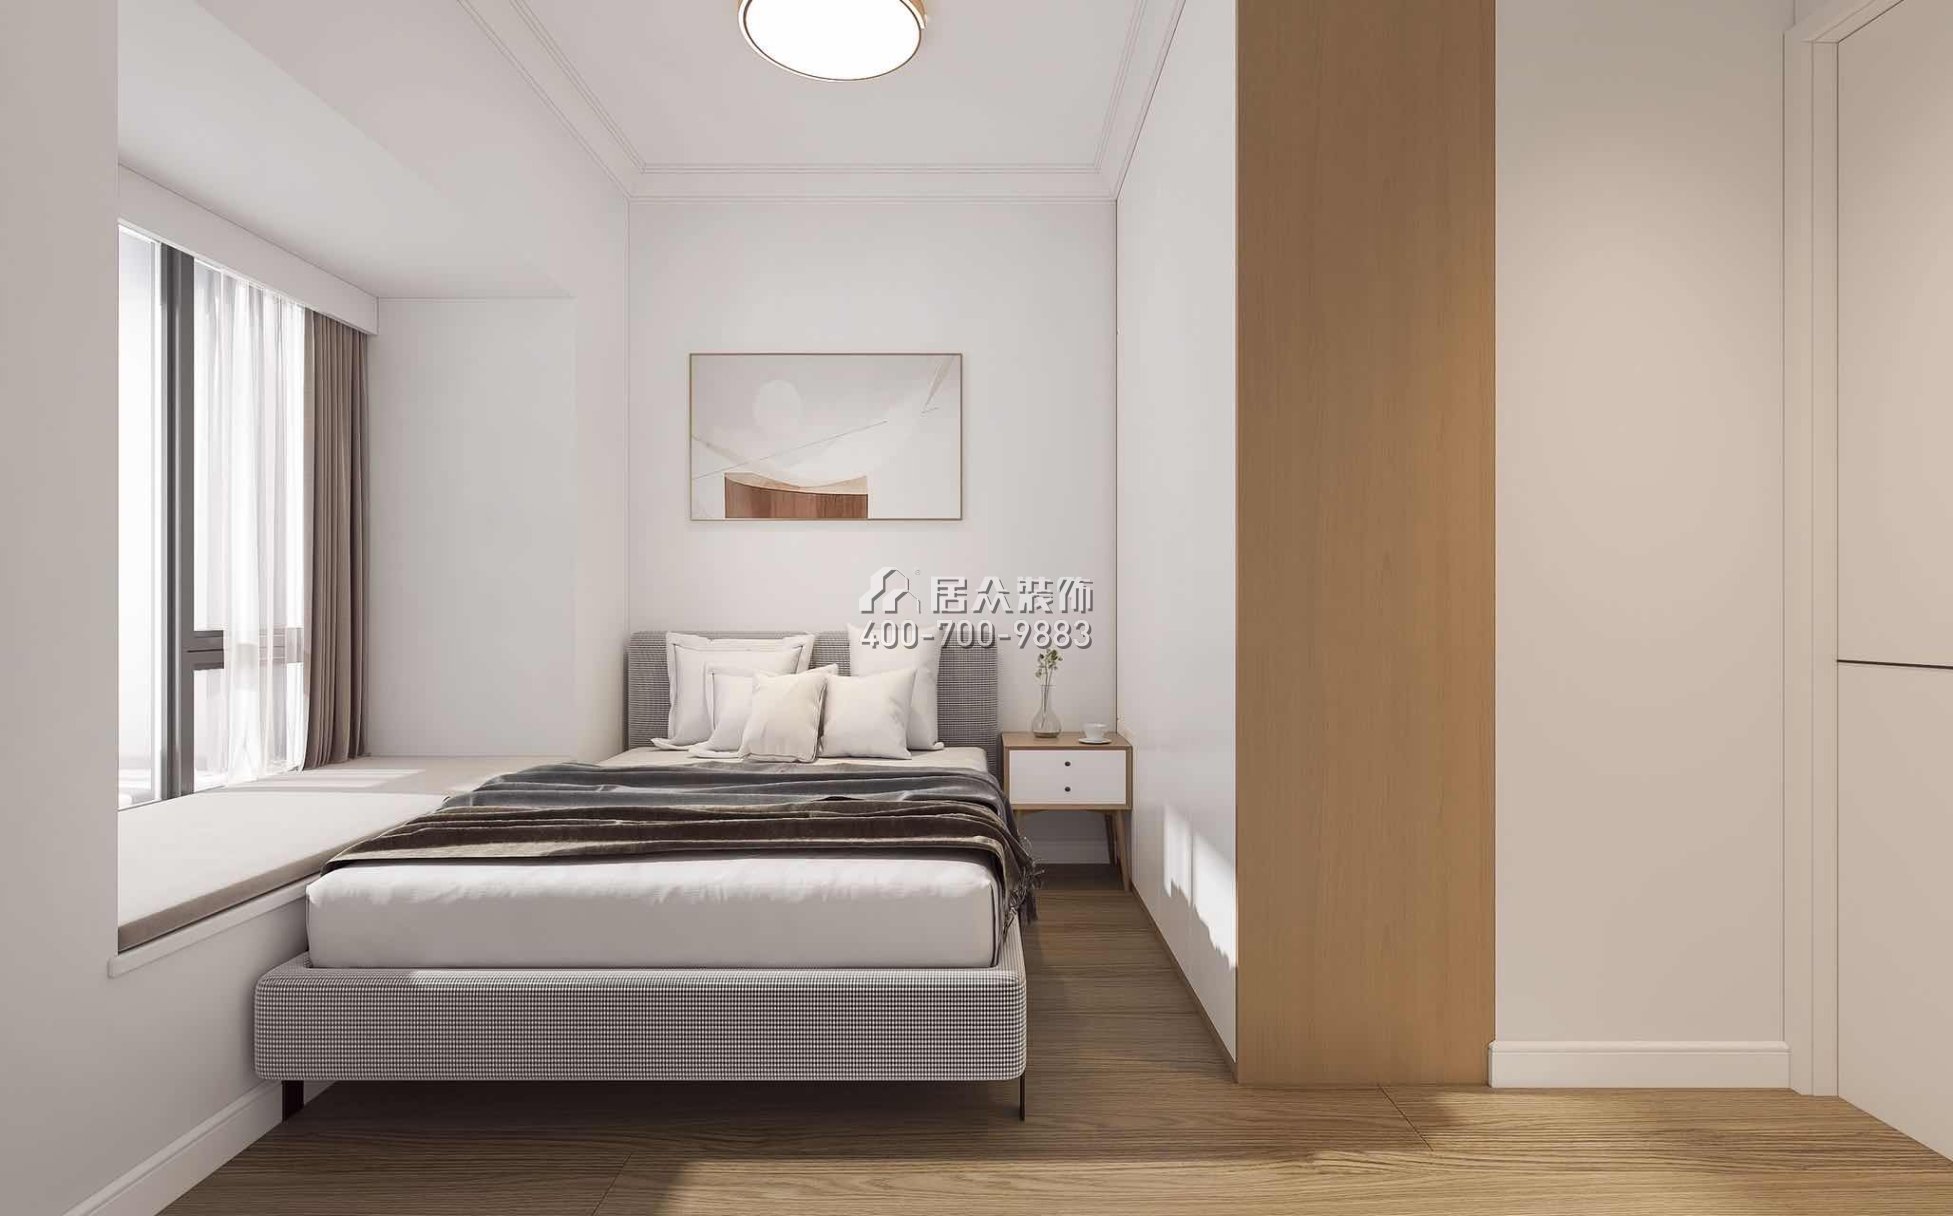 鼎太风华七期66平方米北欧风格平层户型卧室装修效果图